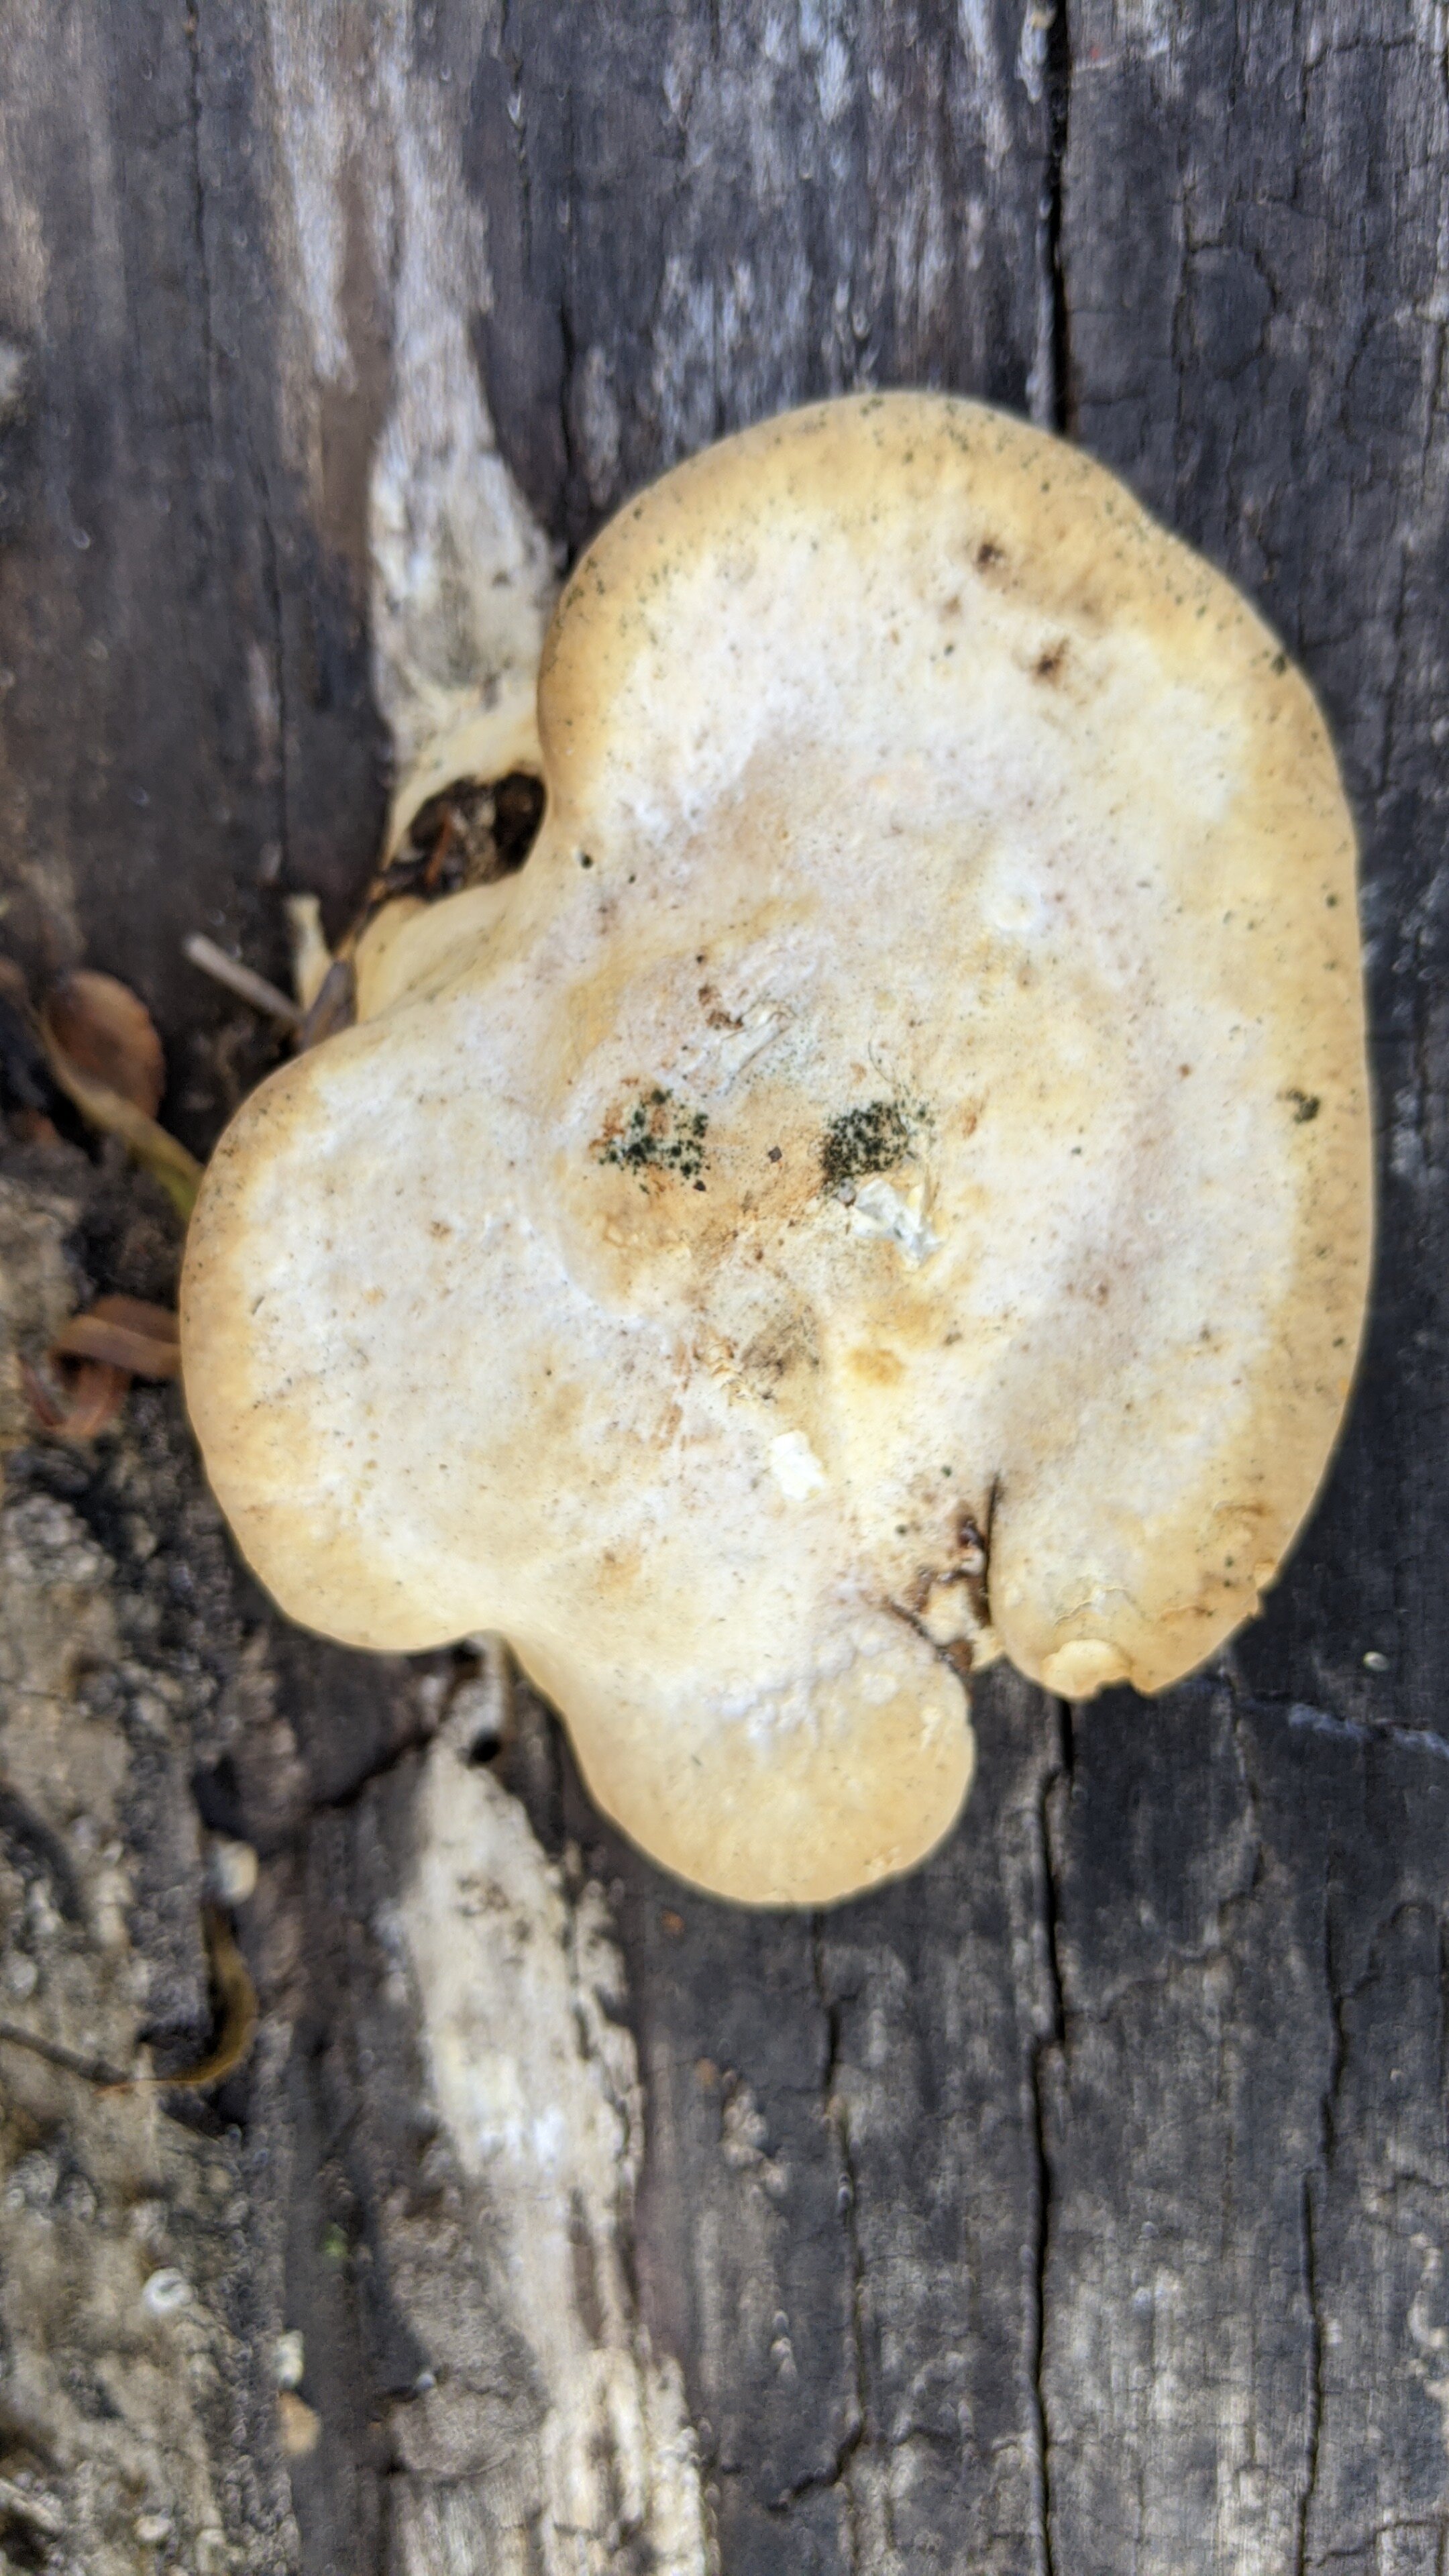 White cheese polypore, Tyromyce schioneus